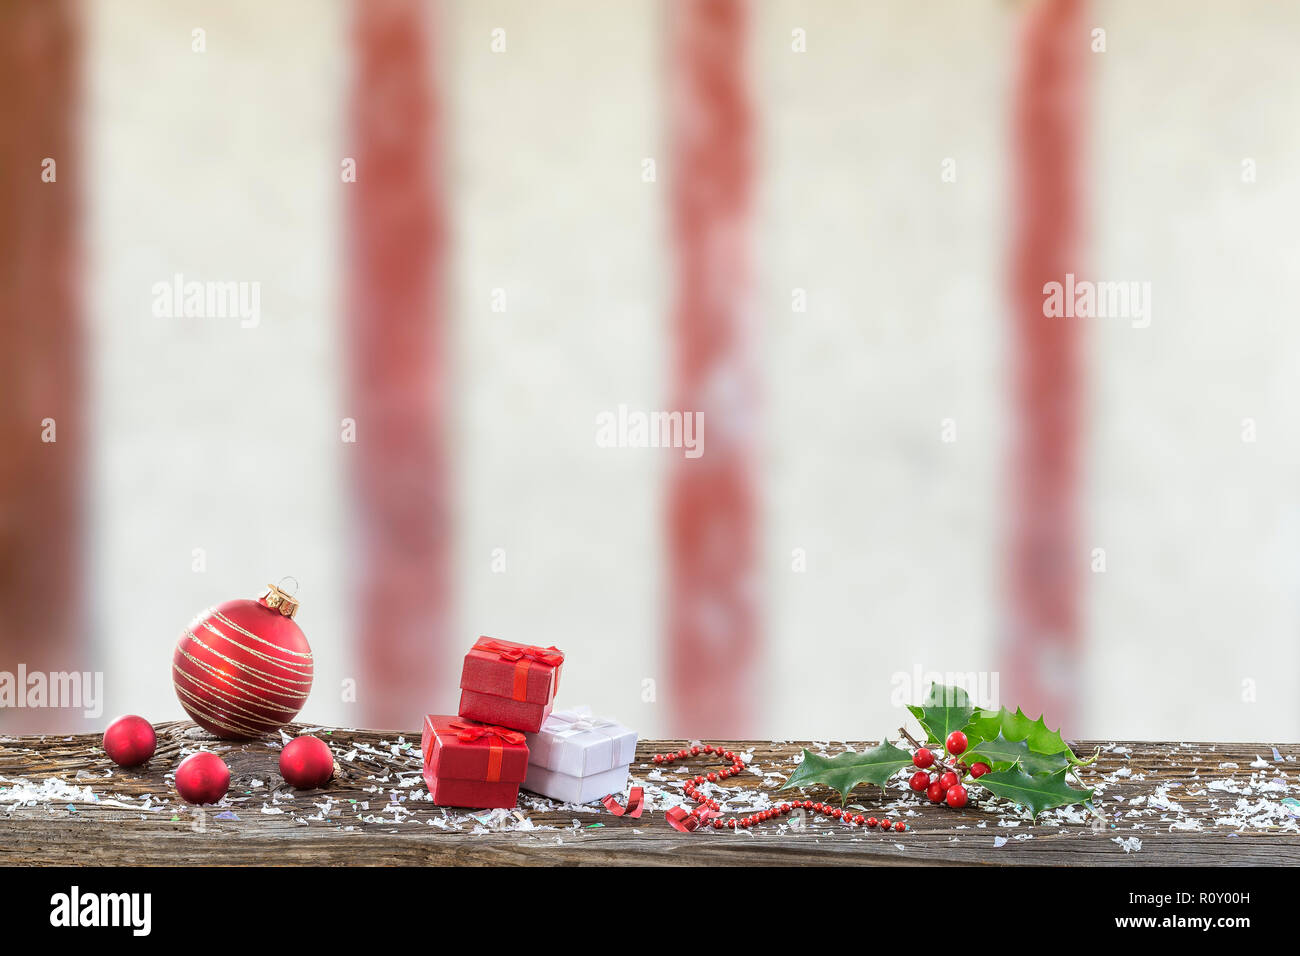 Fond de Noël avec ses décorations boules de Noël et des cadeaux red sur planche de bois contre un mur à colombages Banque D'Images